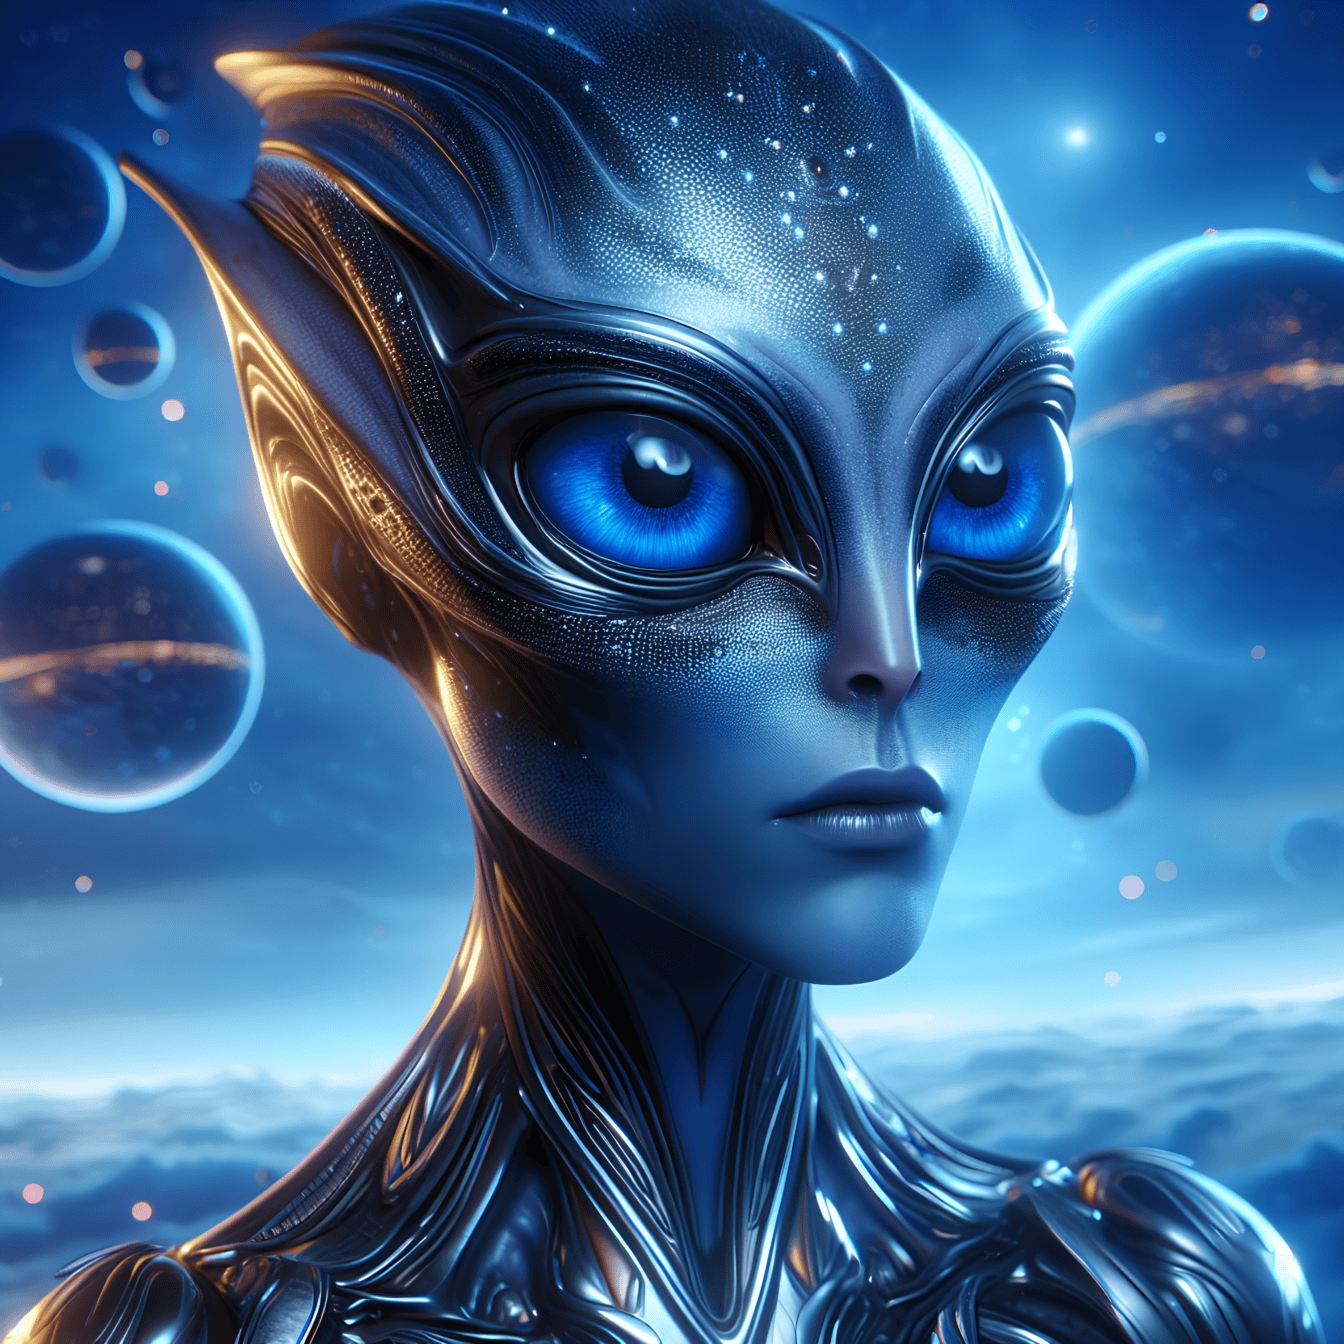 Potret betina makhluk kuantum luar angkasa dengan mata biru tua bercahaya besar